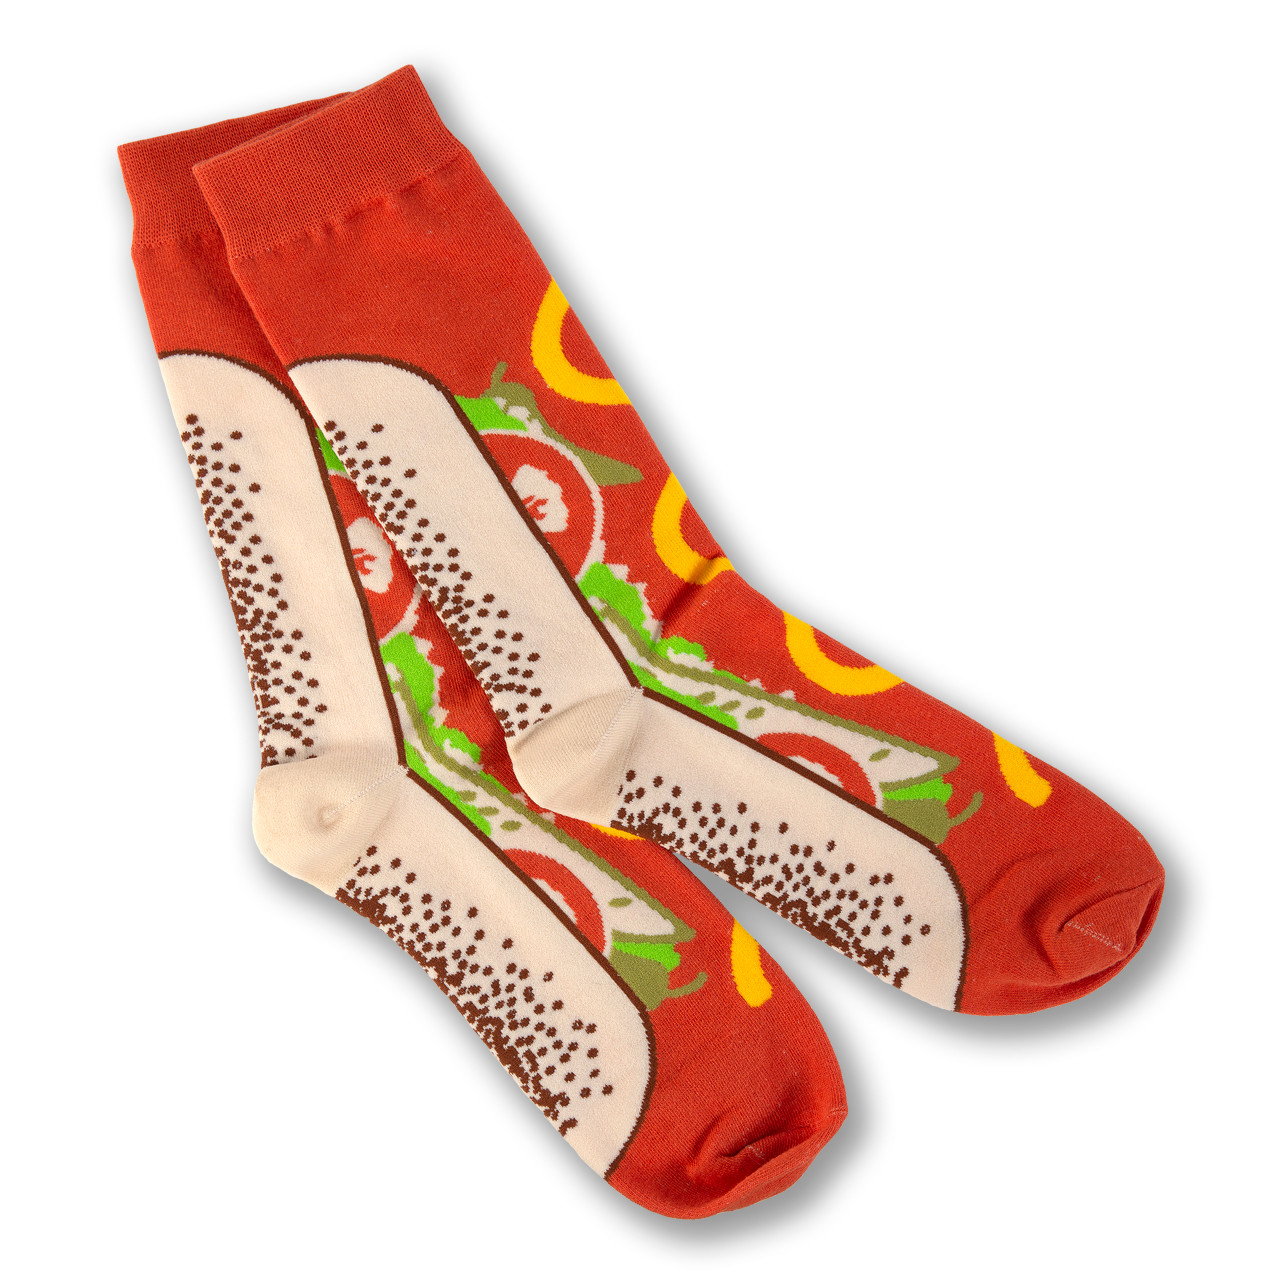 Men's Wiener Dog Hot Dog Socks